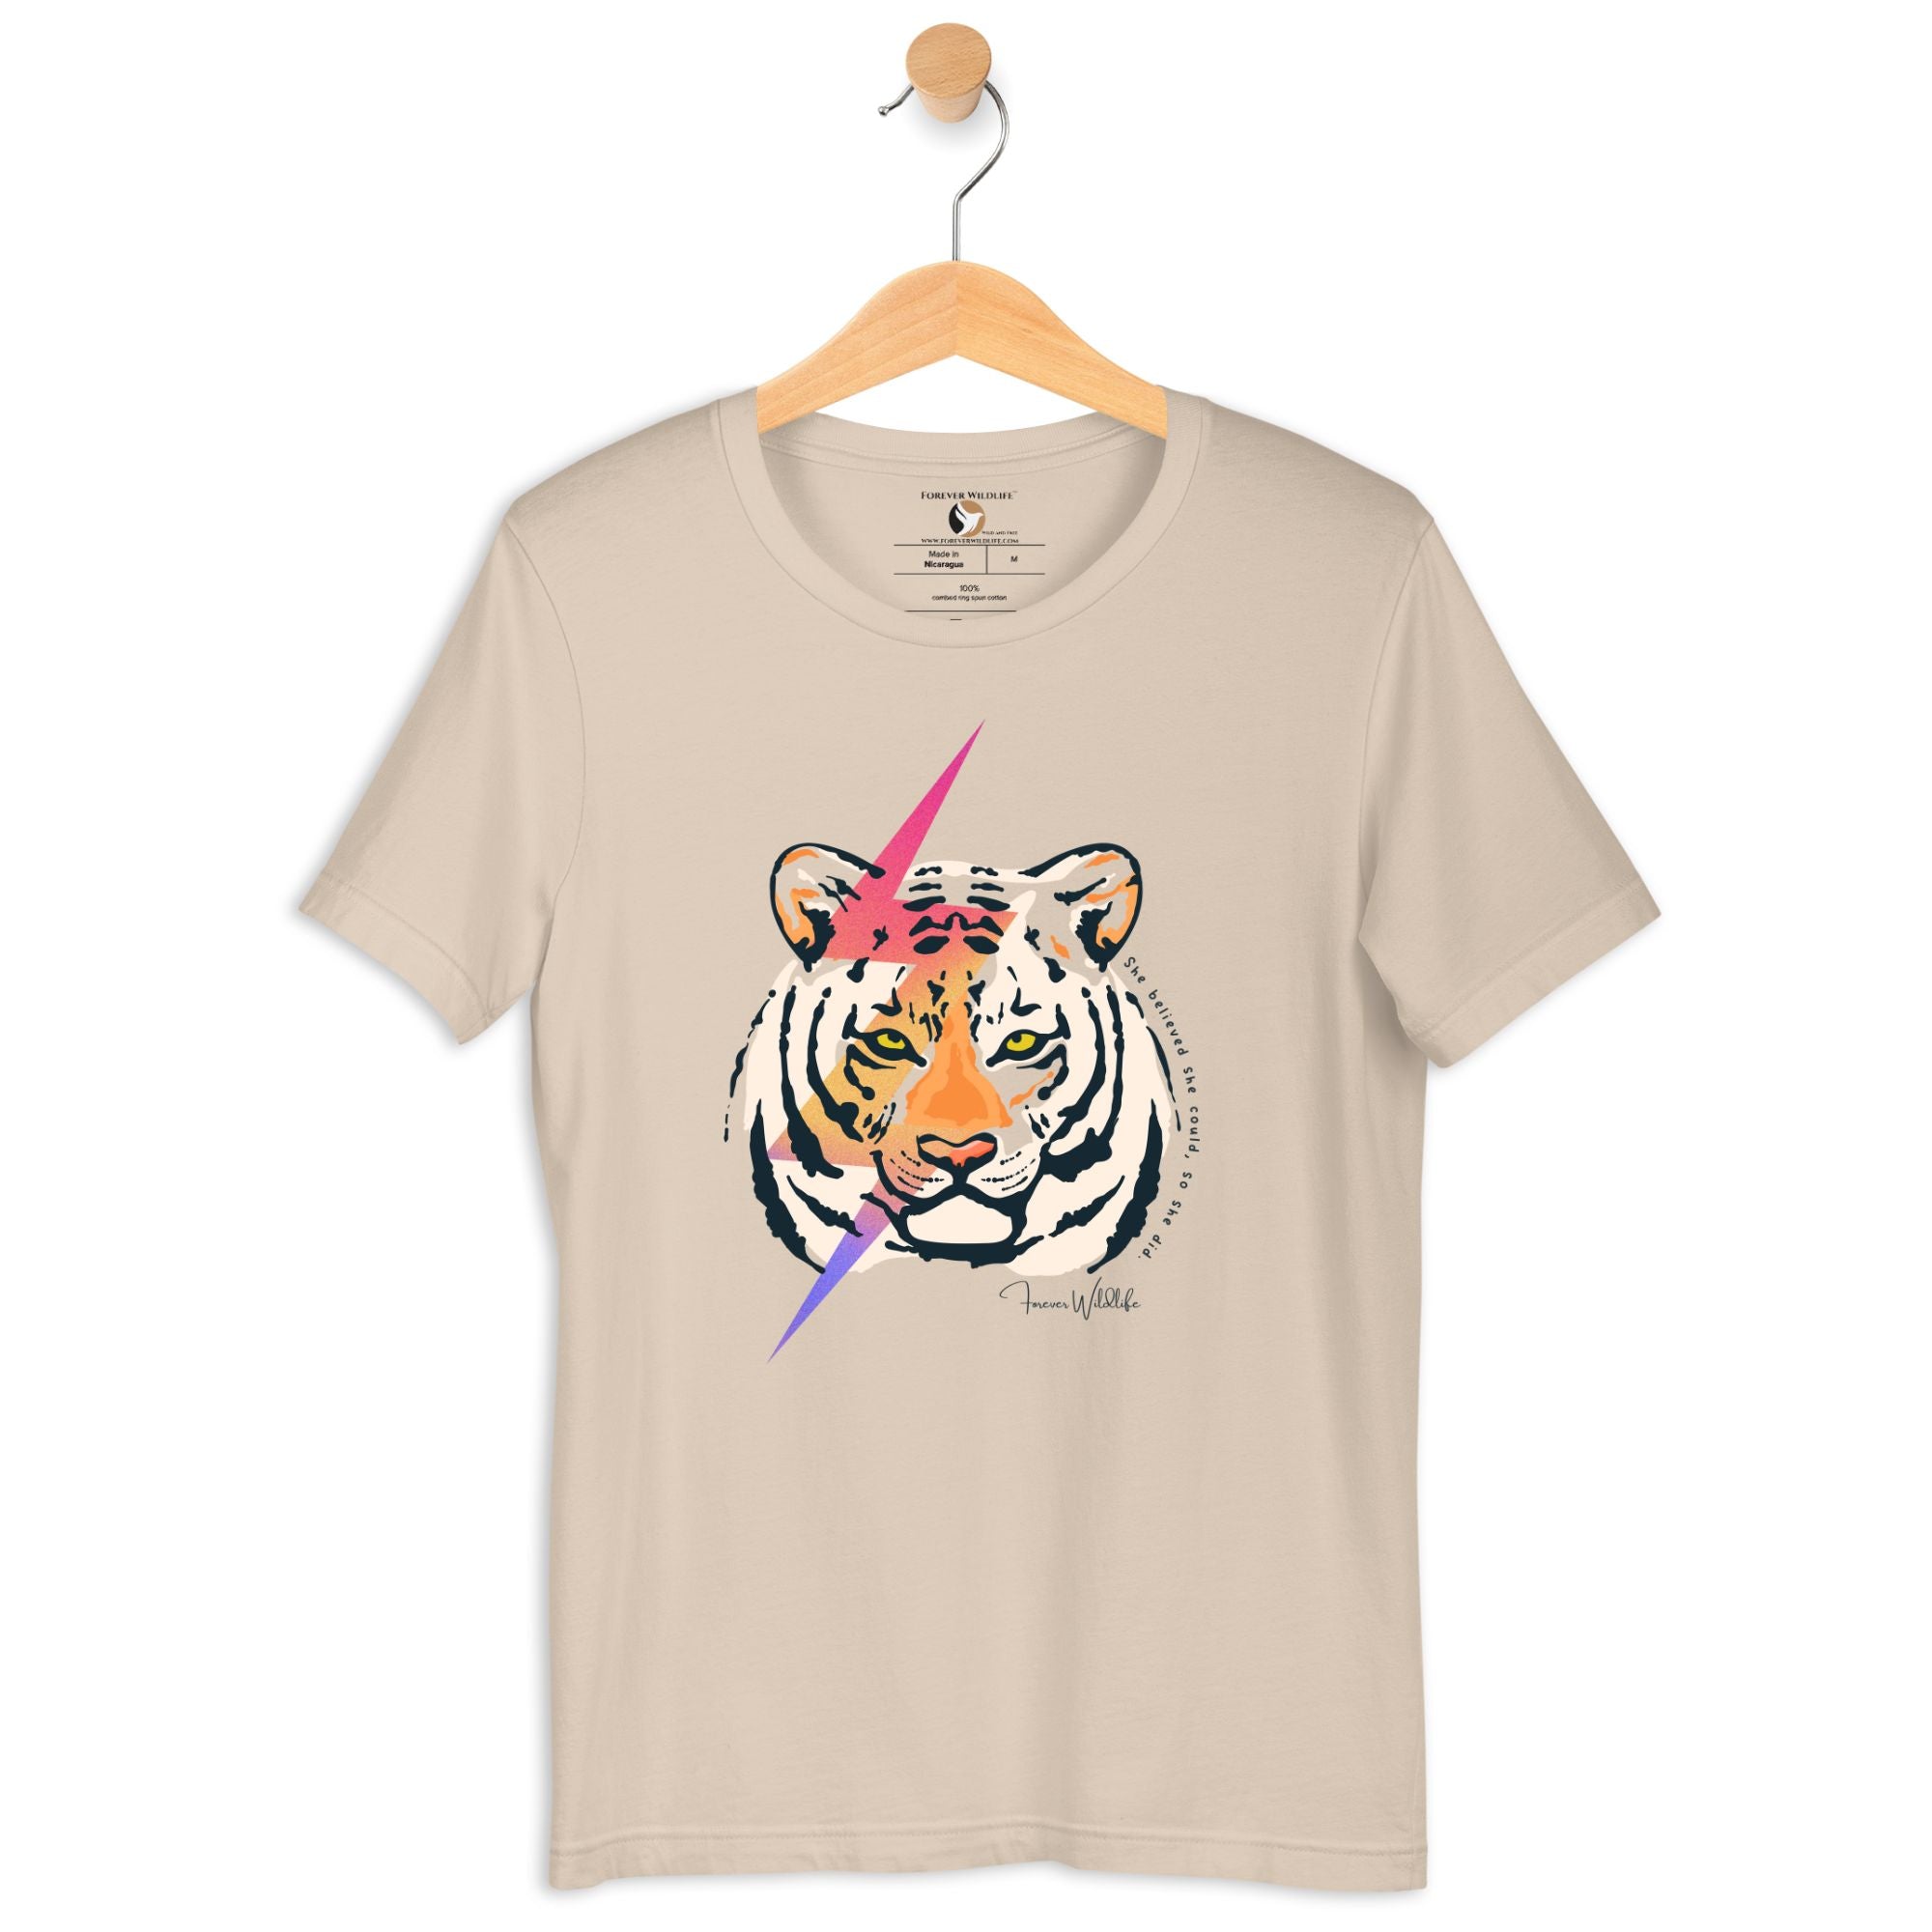 Tiger T-Shirt in Soft Cream – Premium Wildlife T-Shirt Design, Tiger Shirts and Wildlife Clothing